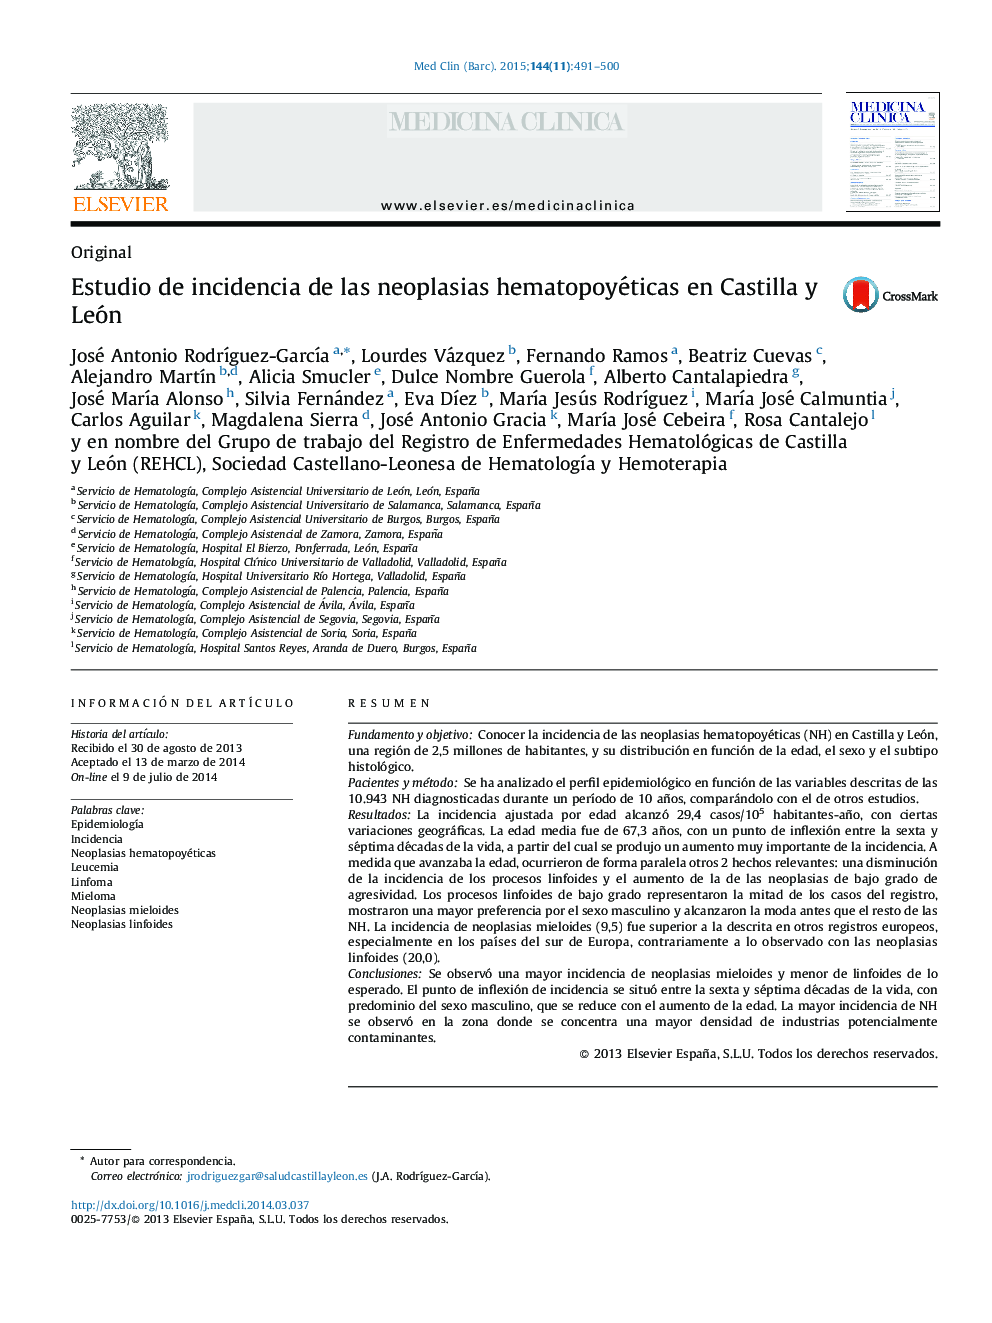 Estudio de incidencia de las neoplasias hematopoyéticas en Castilla y León